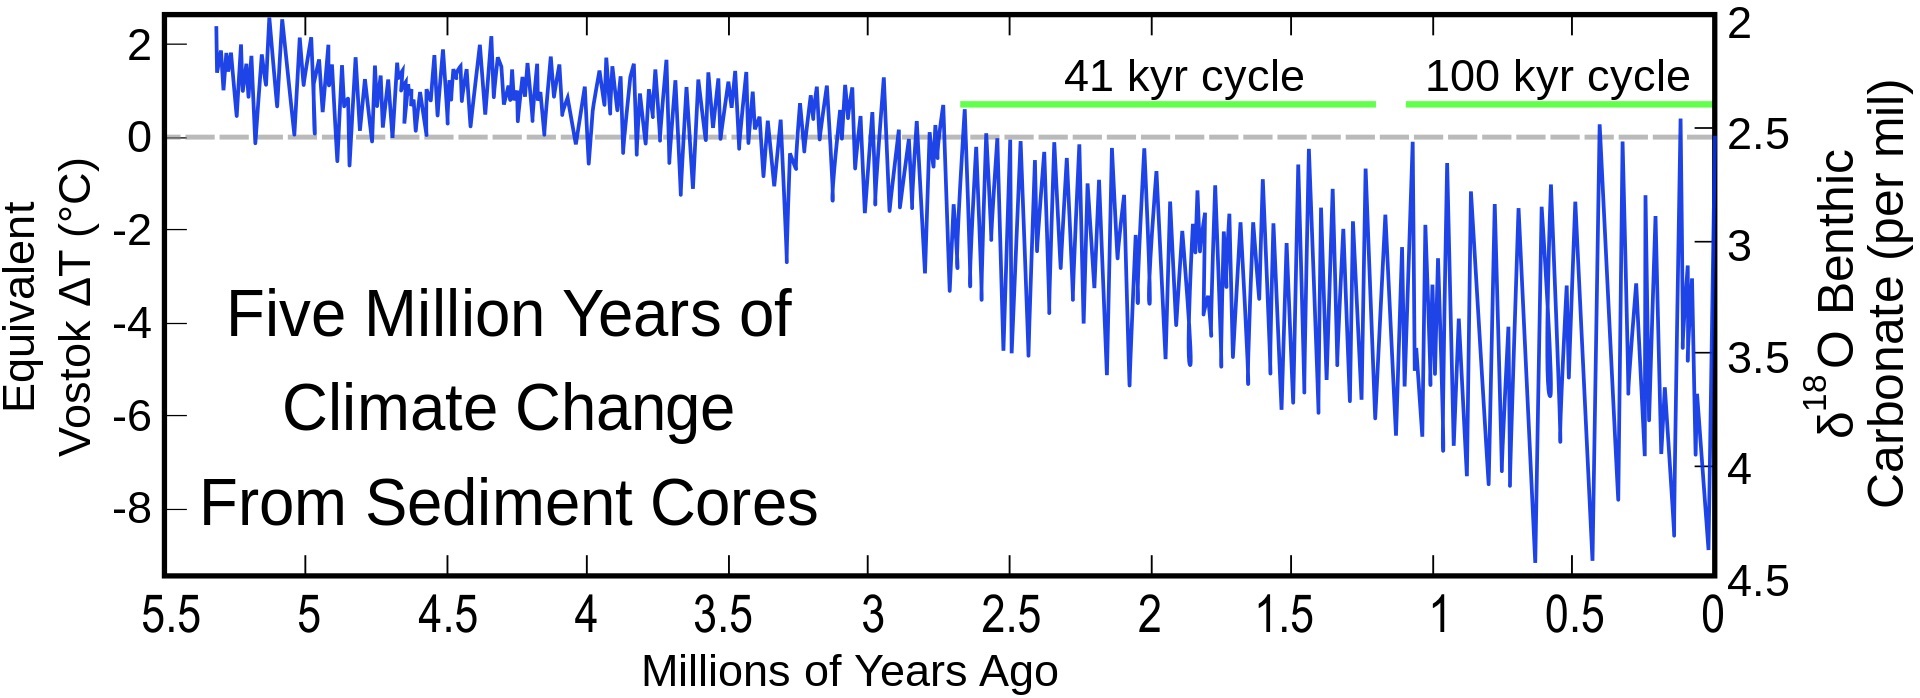 Globální střední teplota v mořích za posledních 5 miliónů let dle Lisieckiho a Rayma (2005)